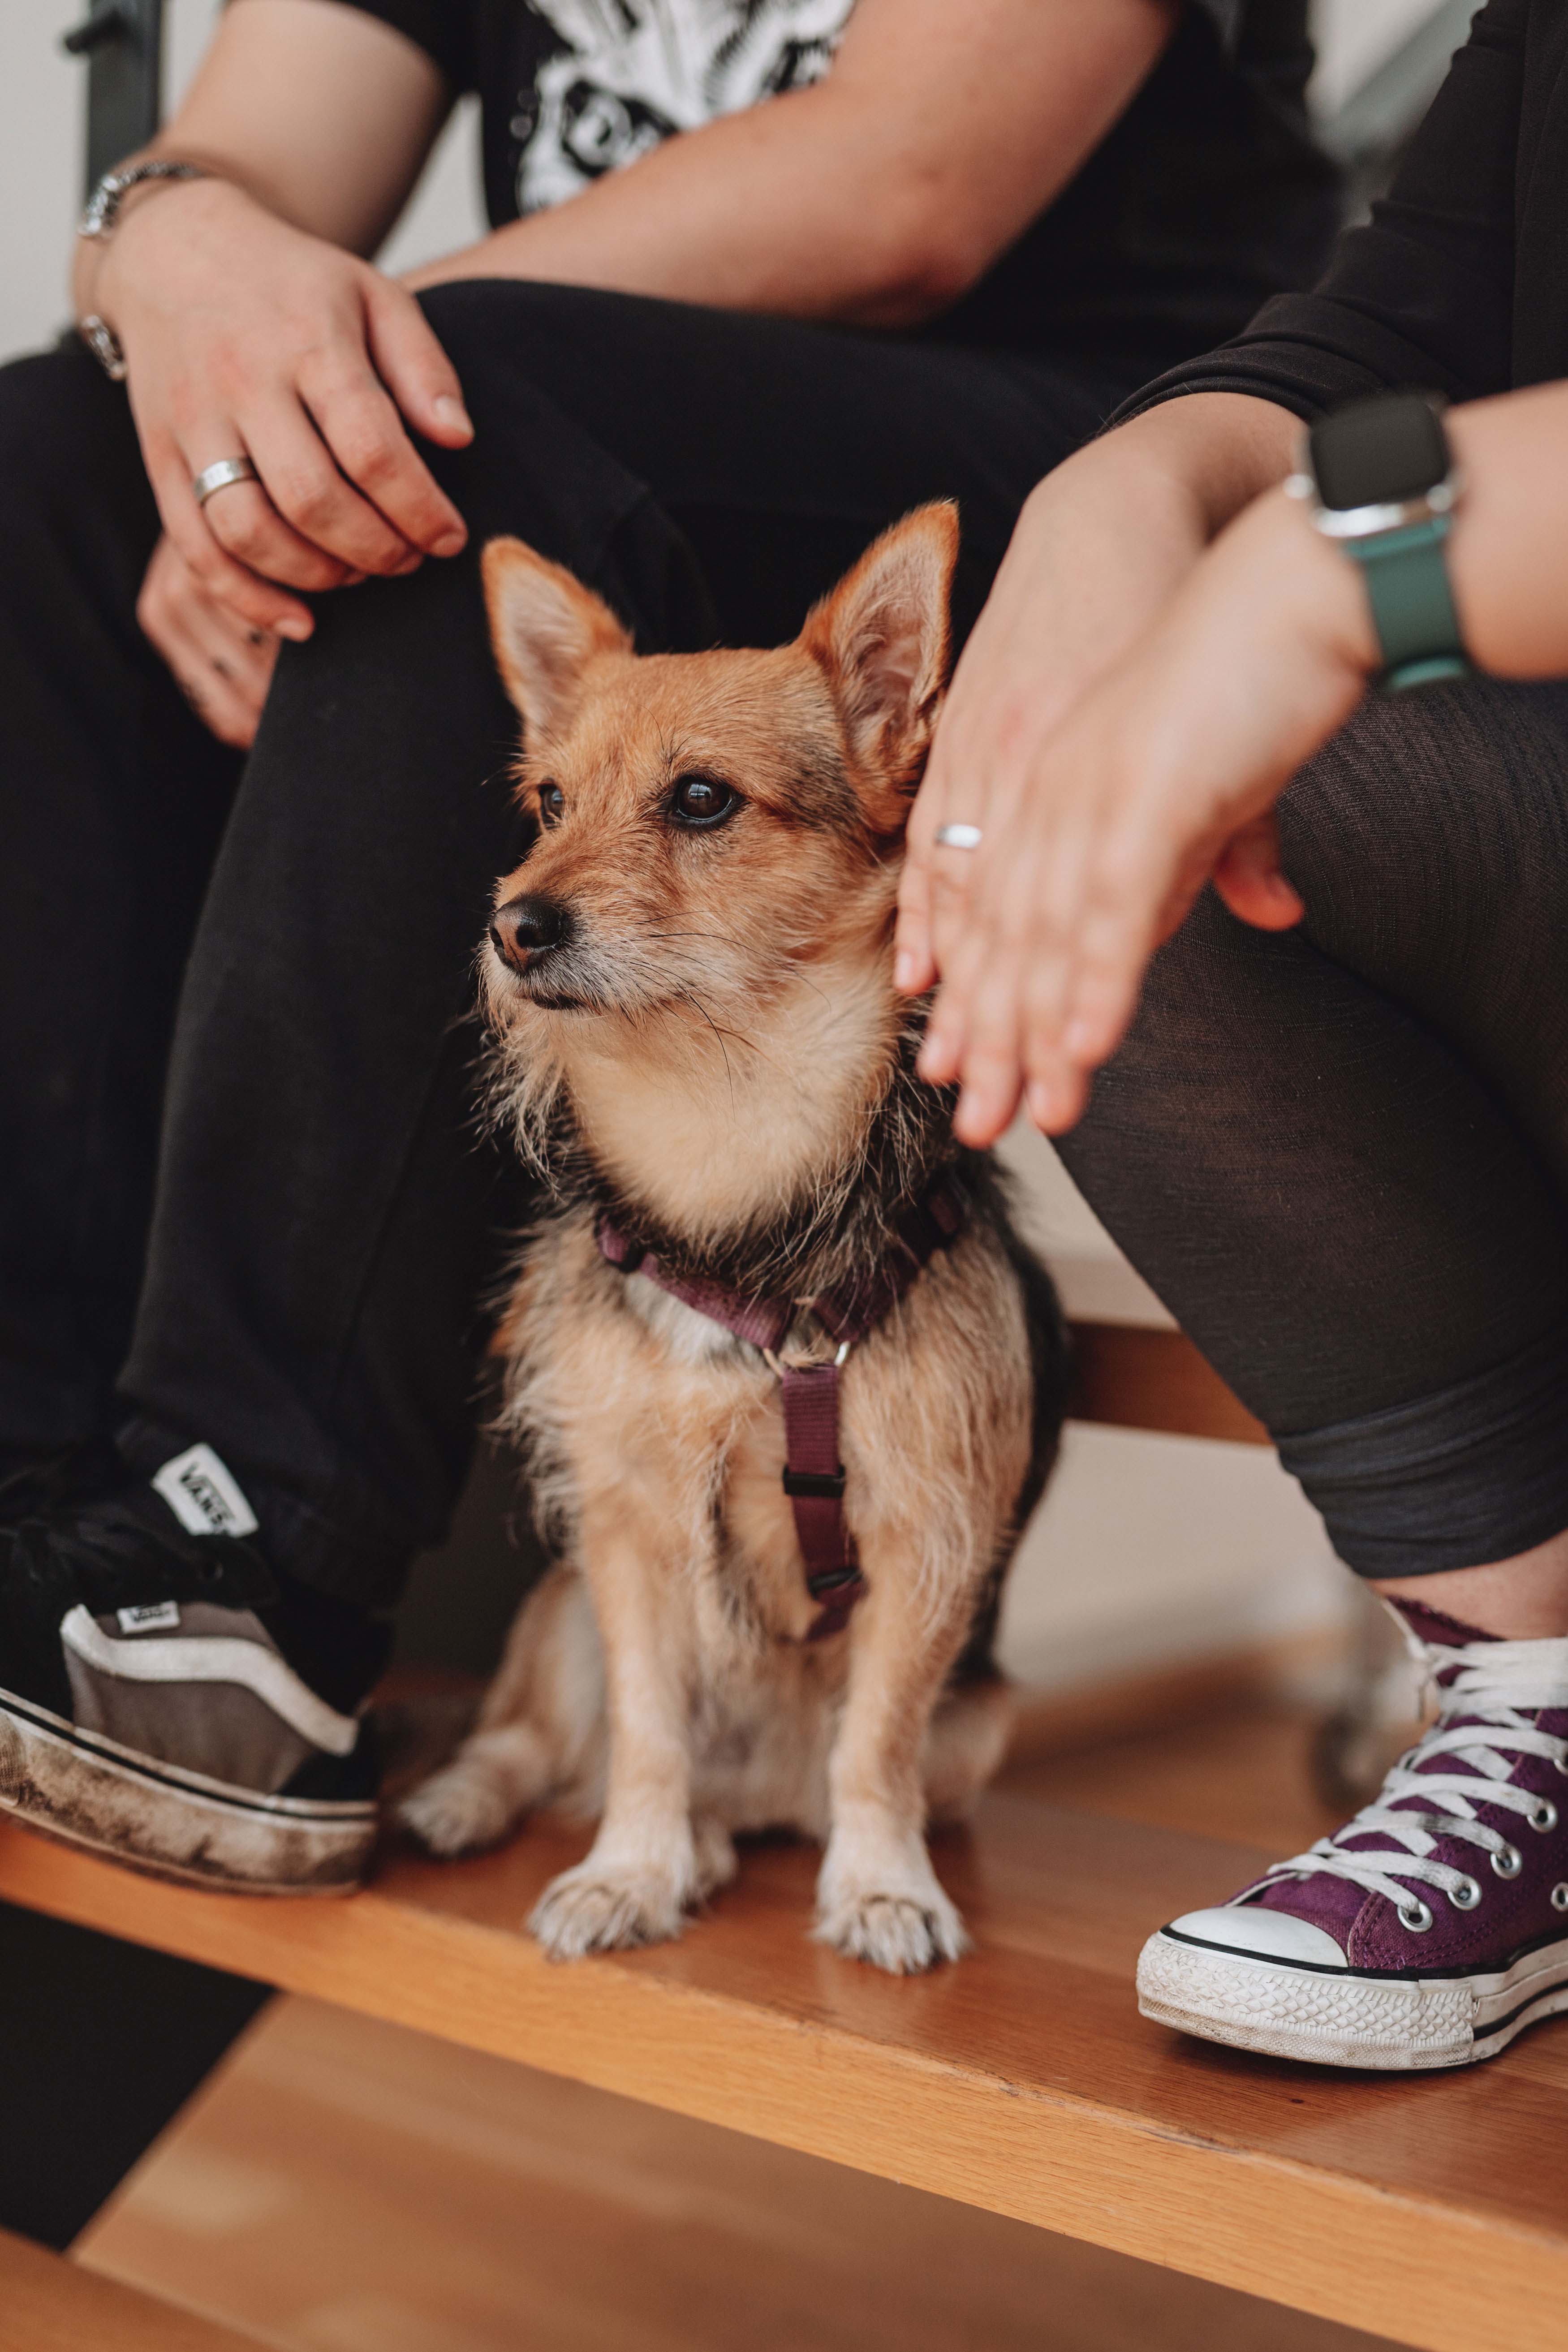 Ein hellbrauner, mittelgroßer Hund sitzt zwischen den Füßen mehrerer Menschen.